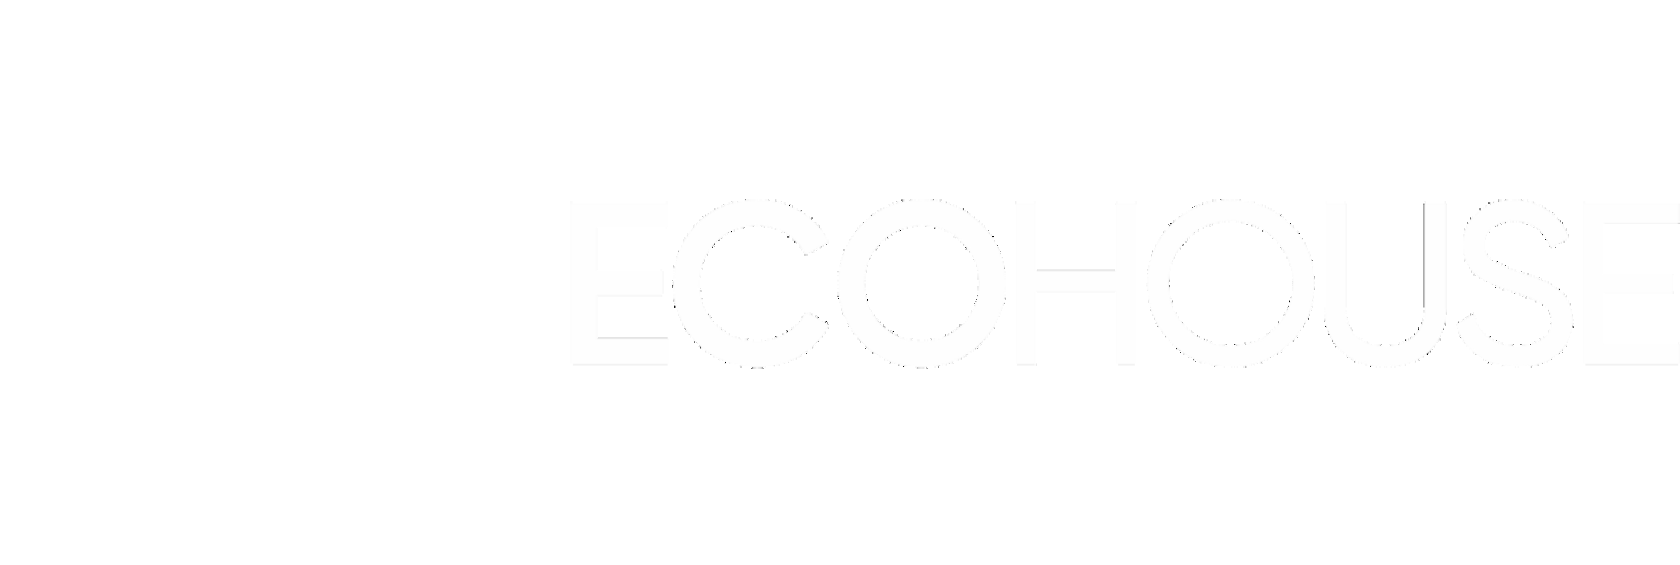 бренд ecohouse логотип